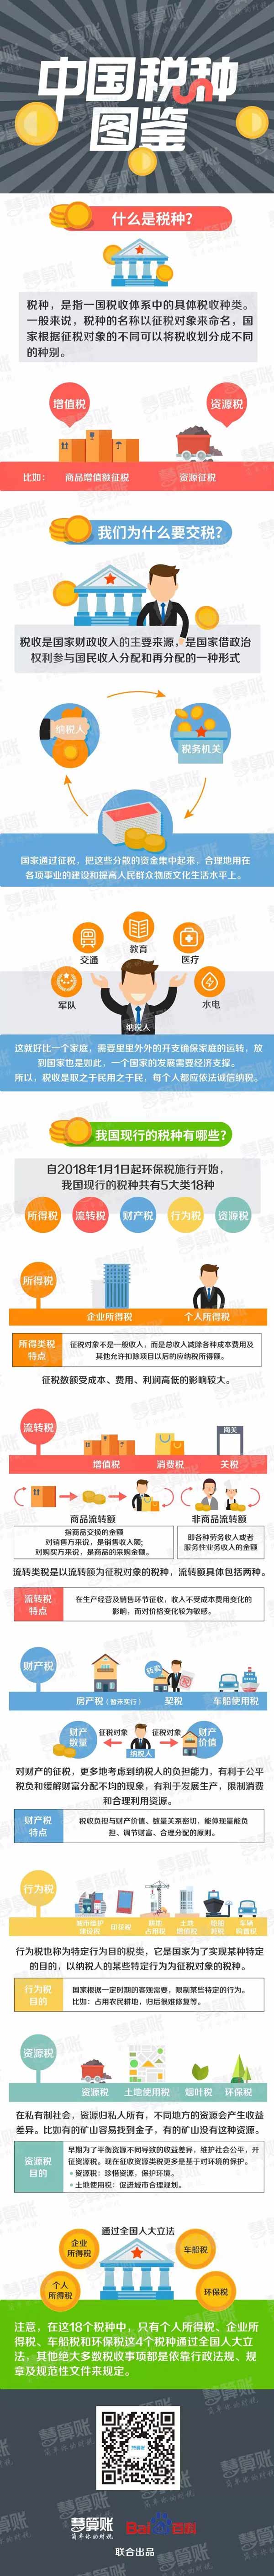 扬中中国税种图鉴